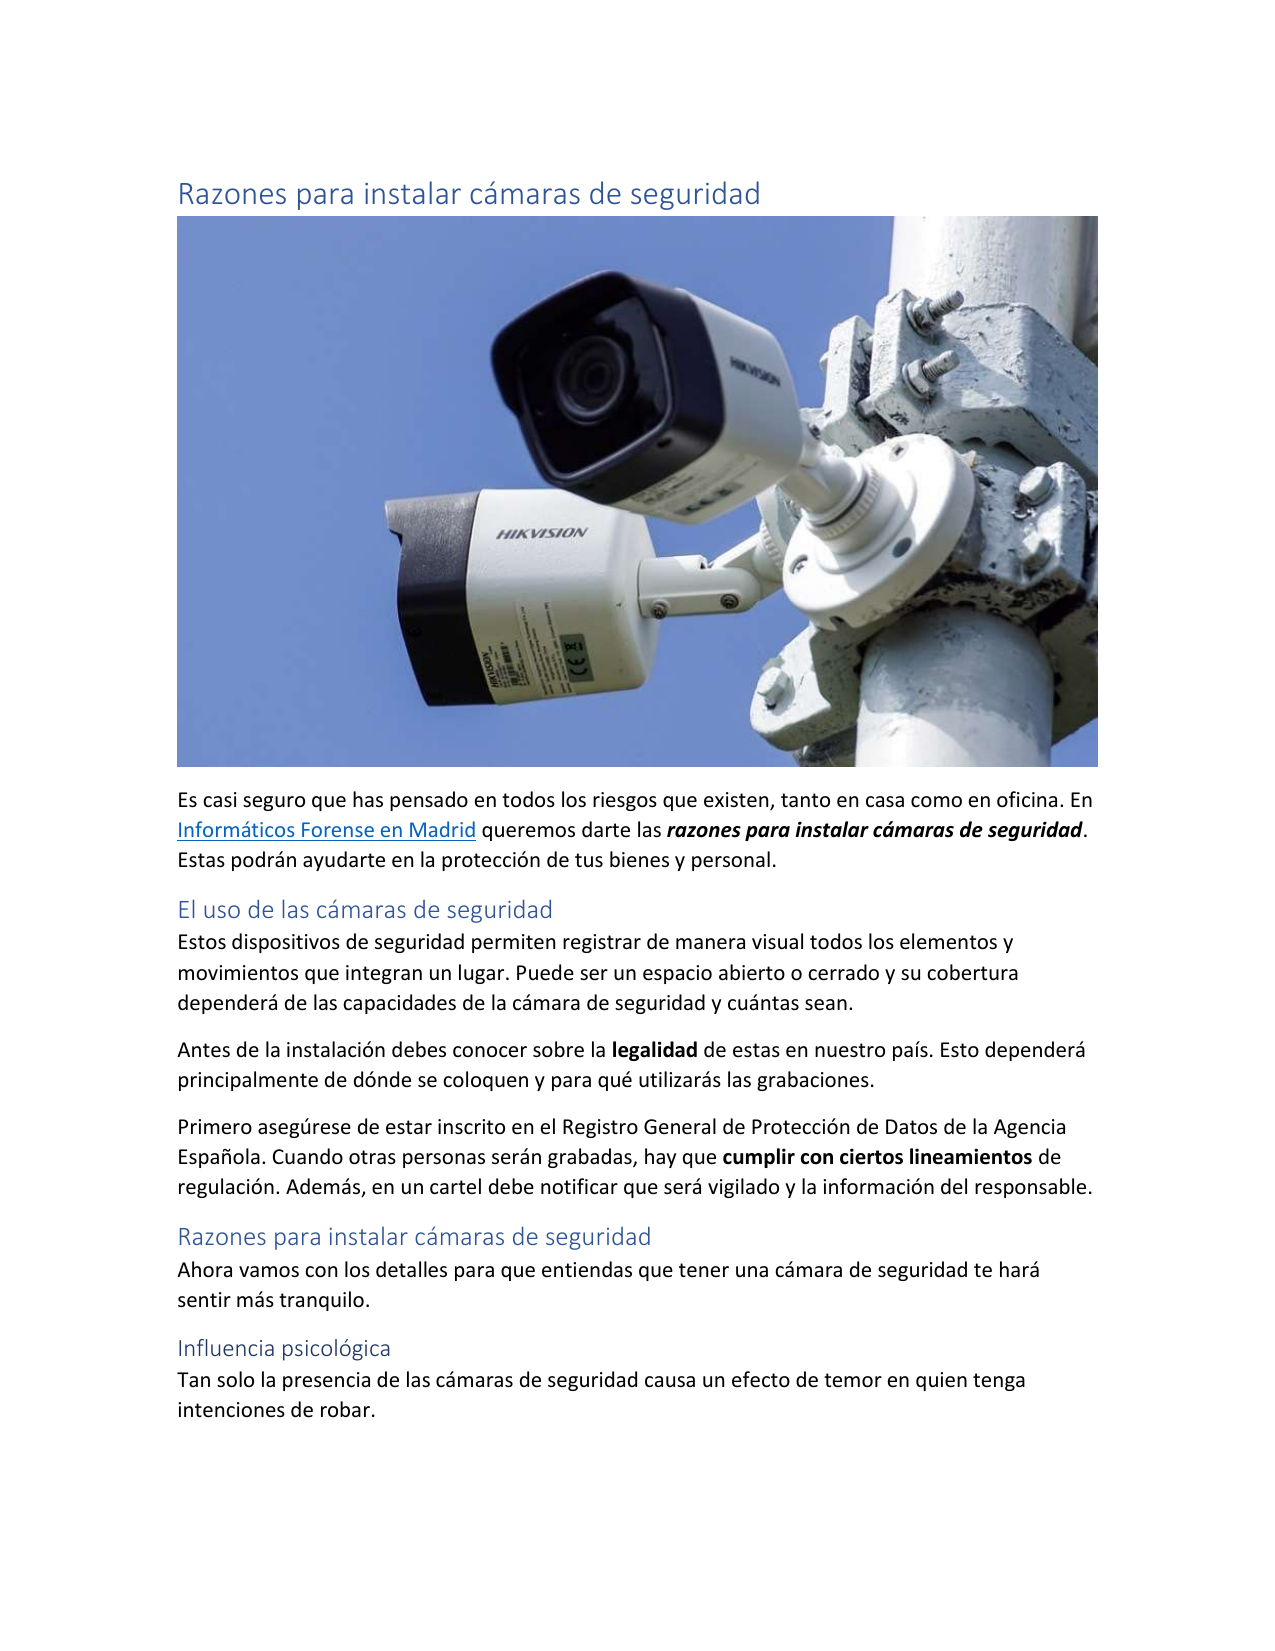 Interactuar extremadamente Alabama Razones para instalar cámaras de seguridad